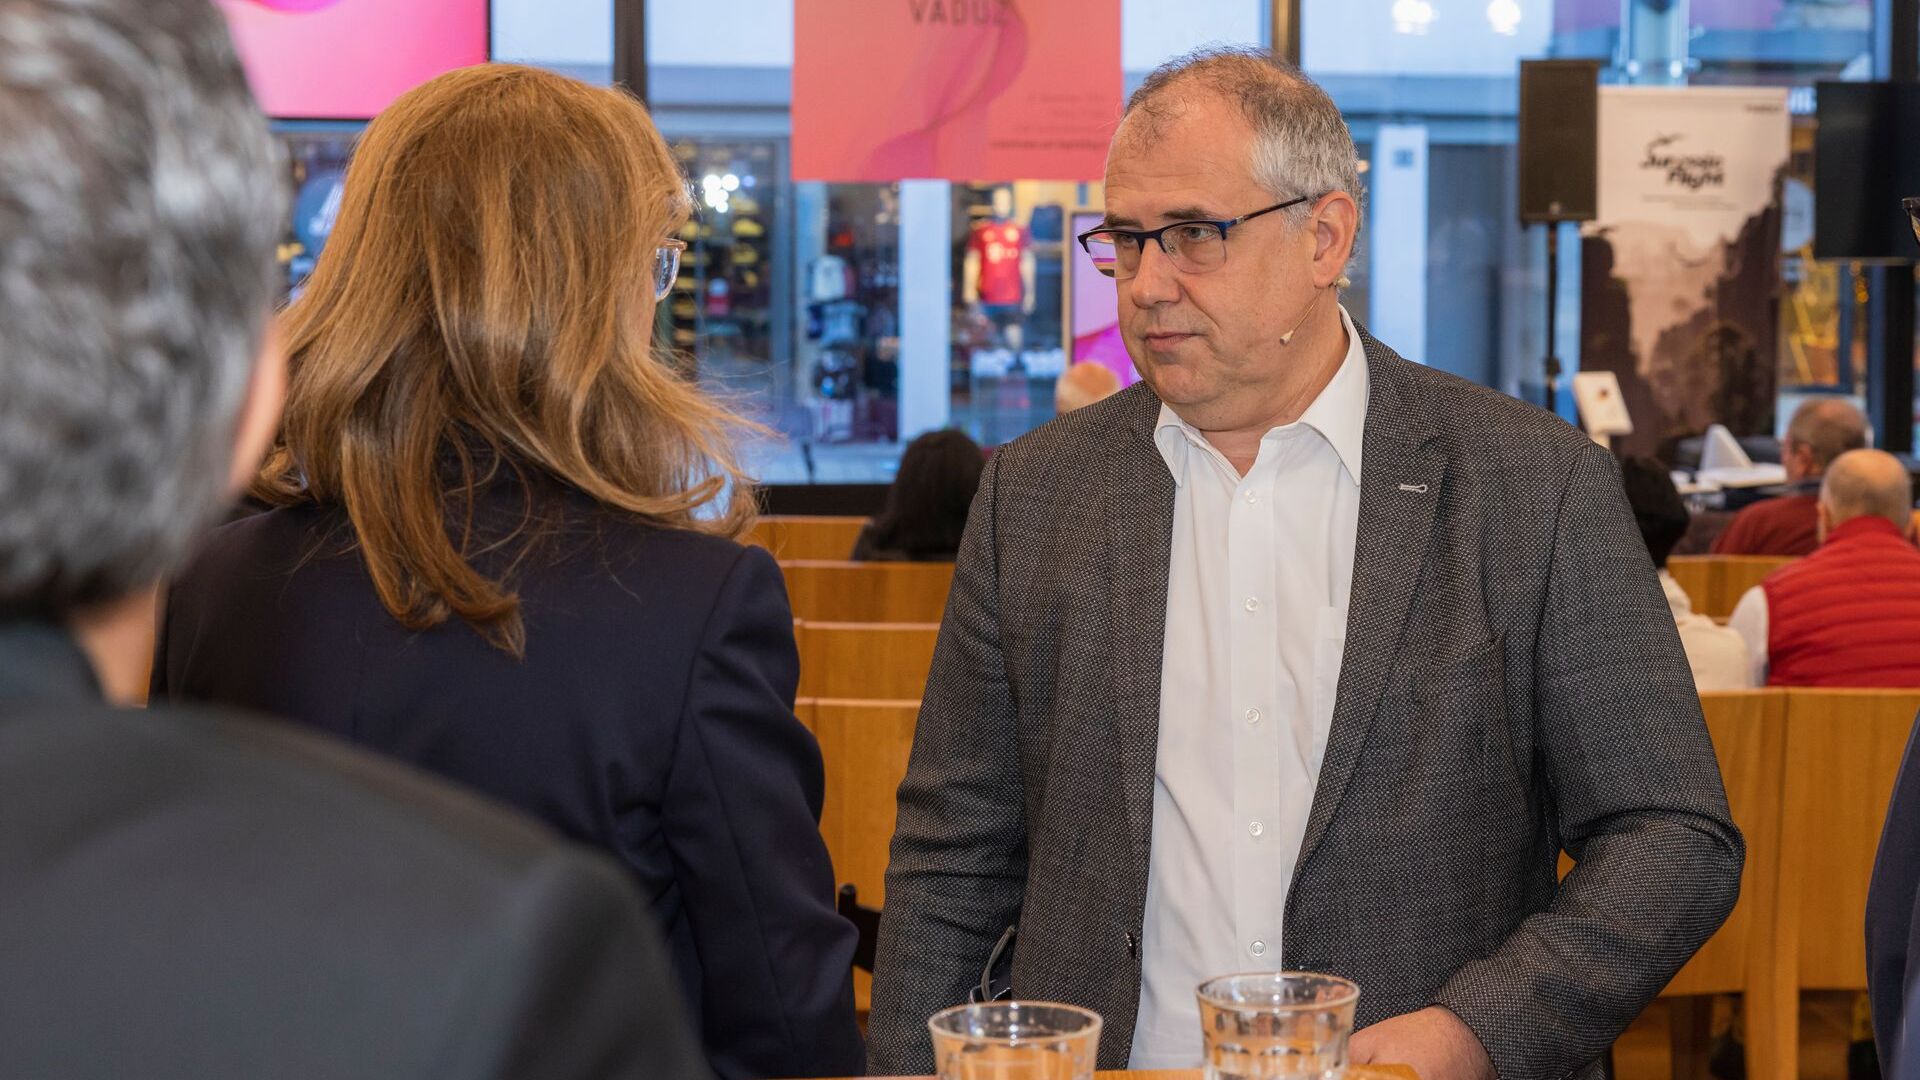 Liechtensteinin ruhtinaskunnan pääkaupungin taidemuseo toivotti "Digitaltag Vaduzin" tervetulleeksi lauantaina 6: keskustelussa varapääministeri Sabine Mounani ja pääkaupungin pormestari Manfred Bischof